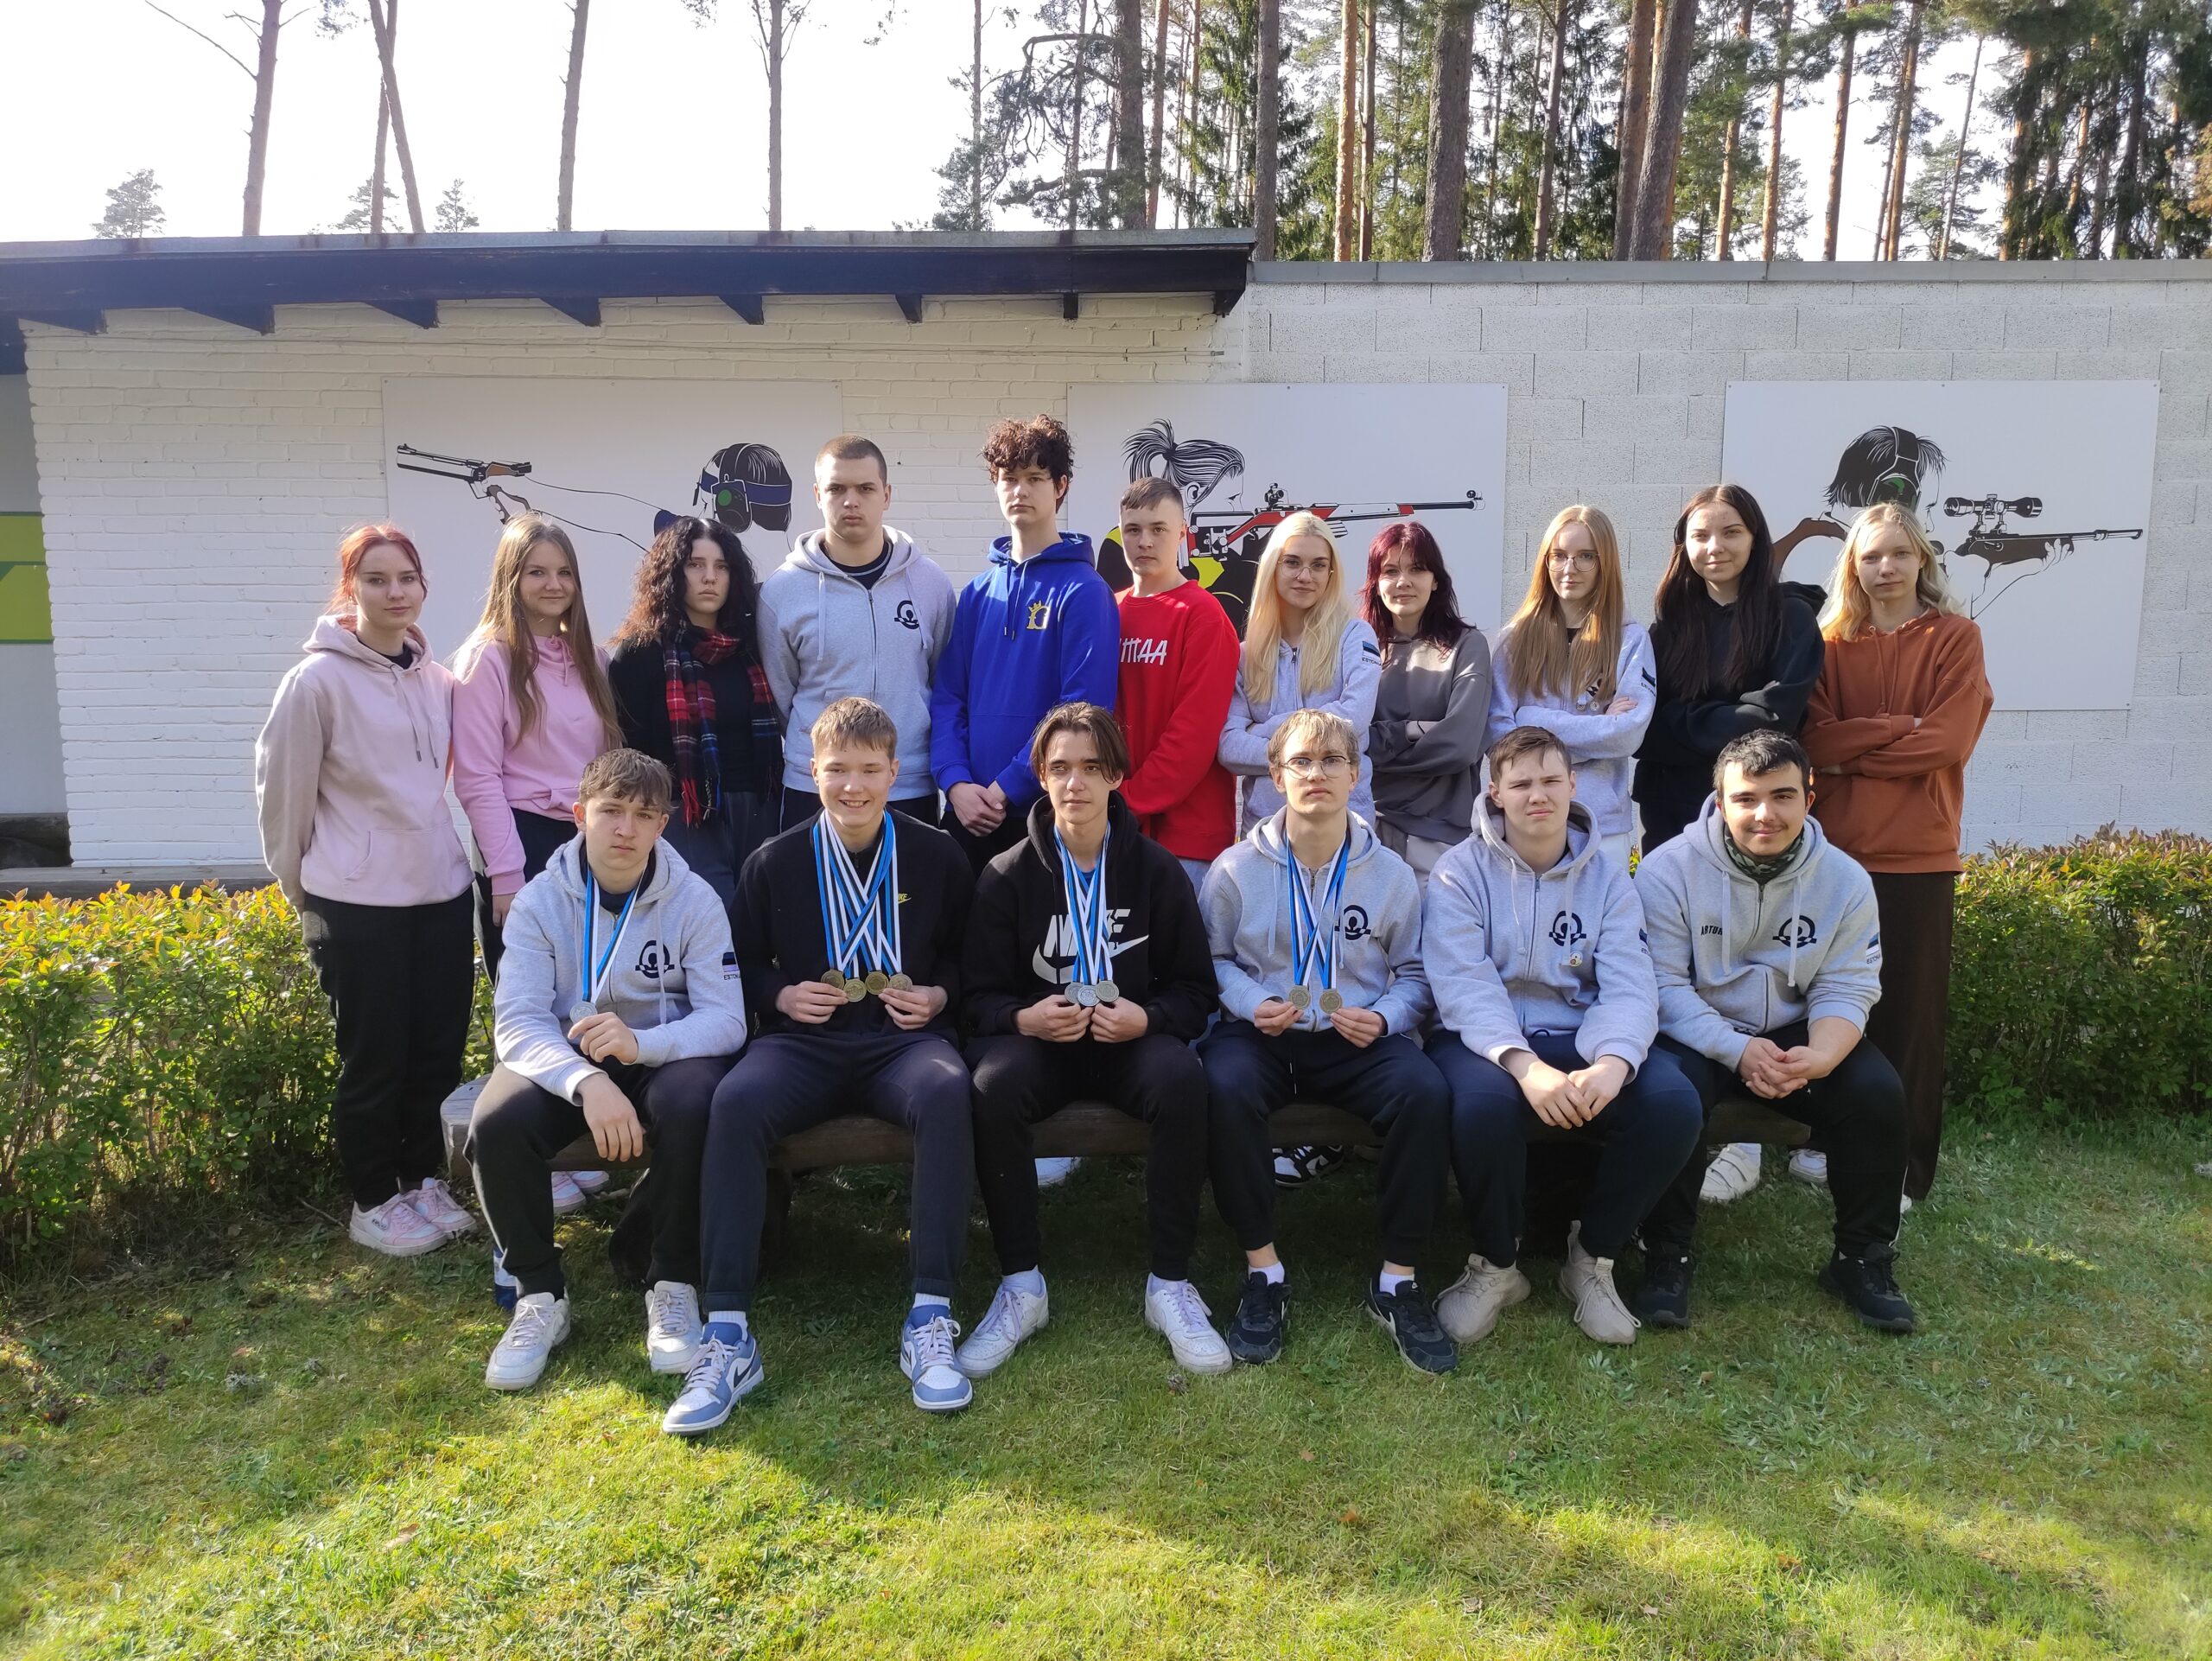 Eesti noorte meistrivõistlustelt Elvas tõid meie noorlaskurid koju 2 hõbe ja 2 pronksmedalit. Kõige rohkemate medalitega tuli võistlustelt tagasi Kaimar Pärnpuu